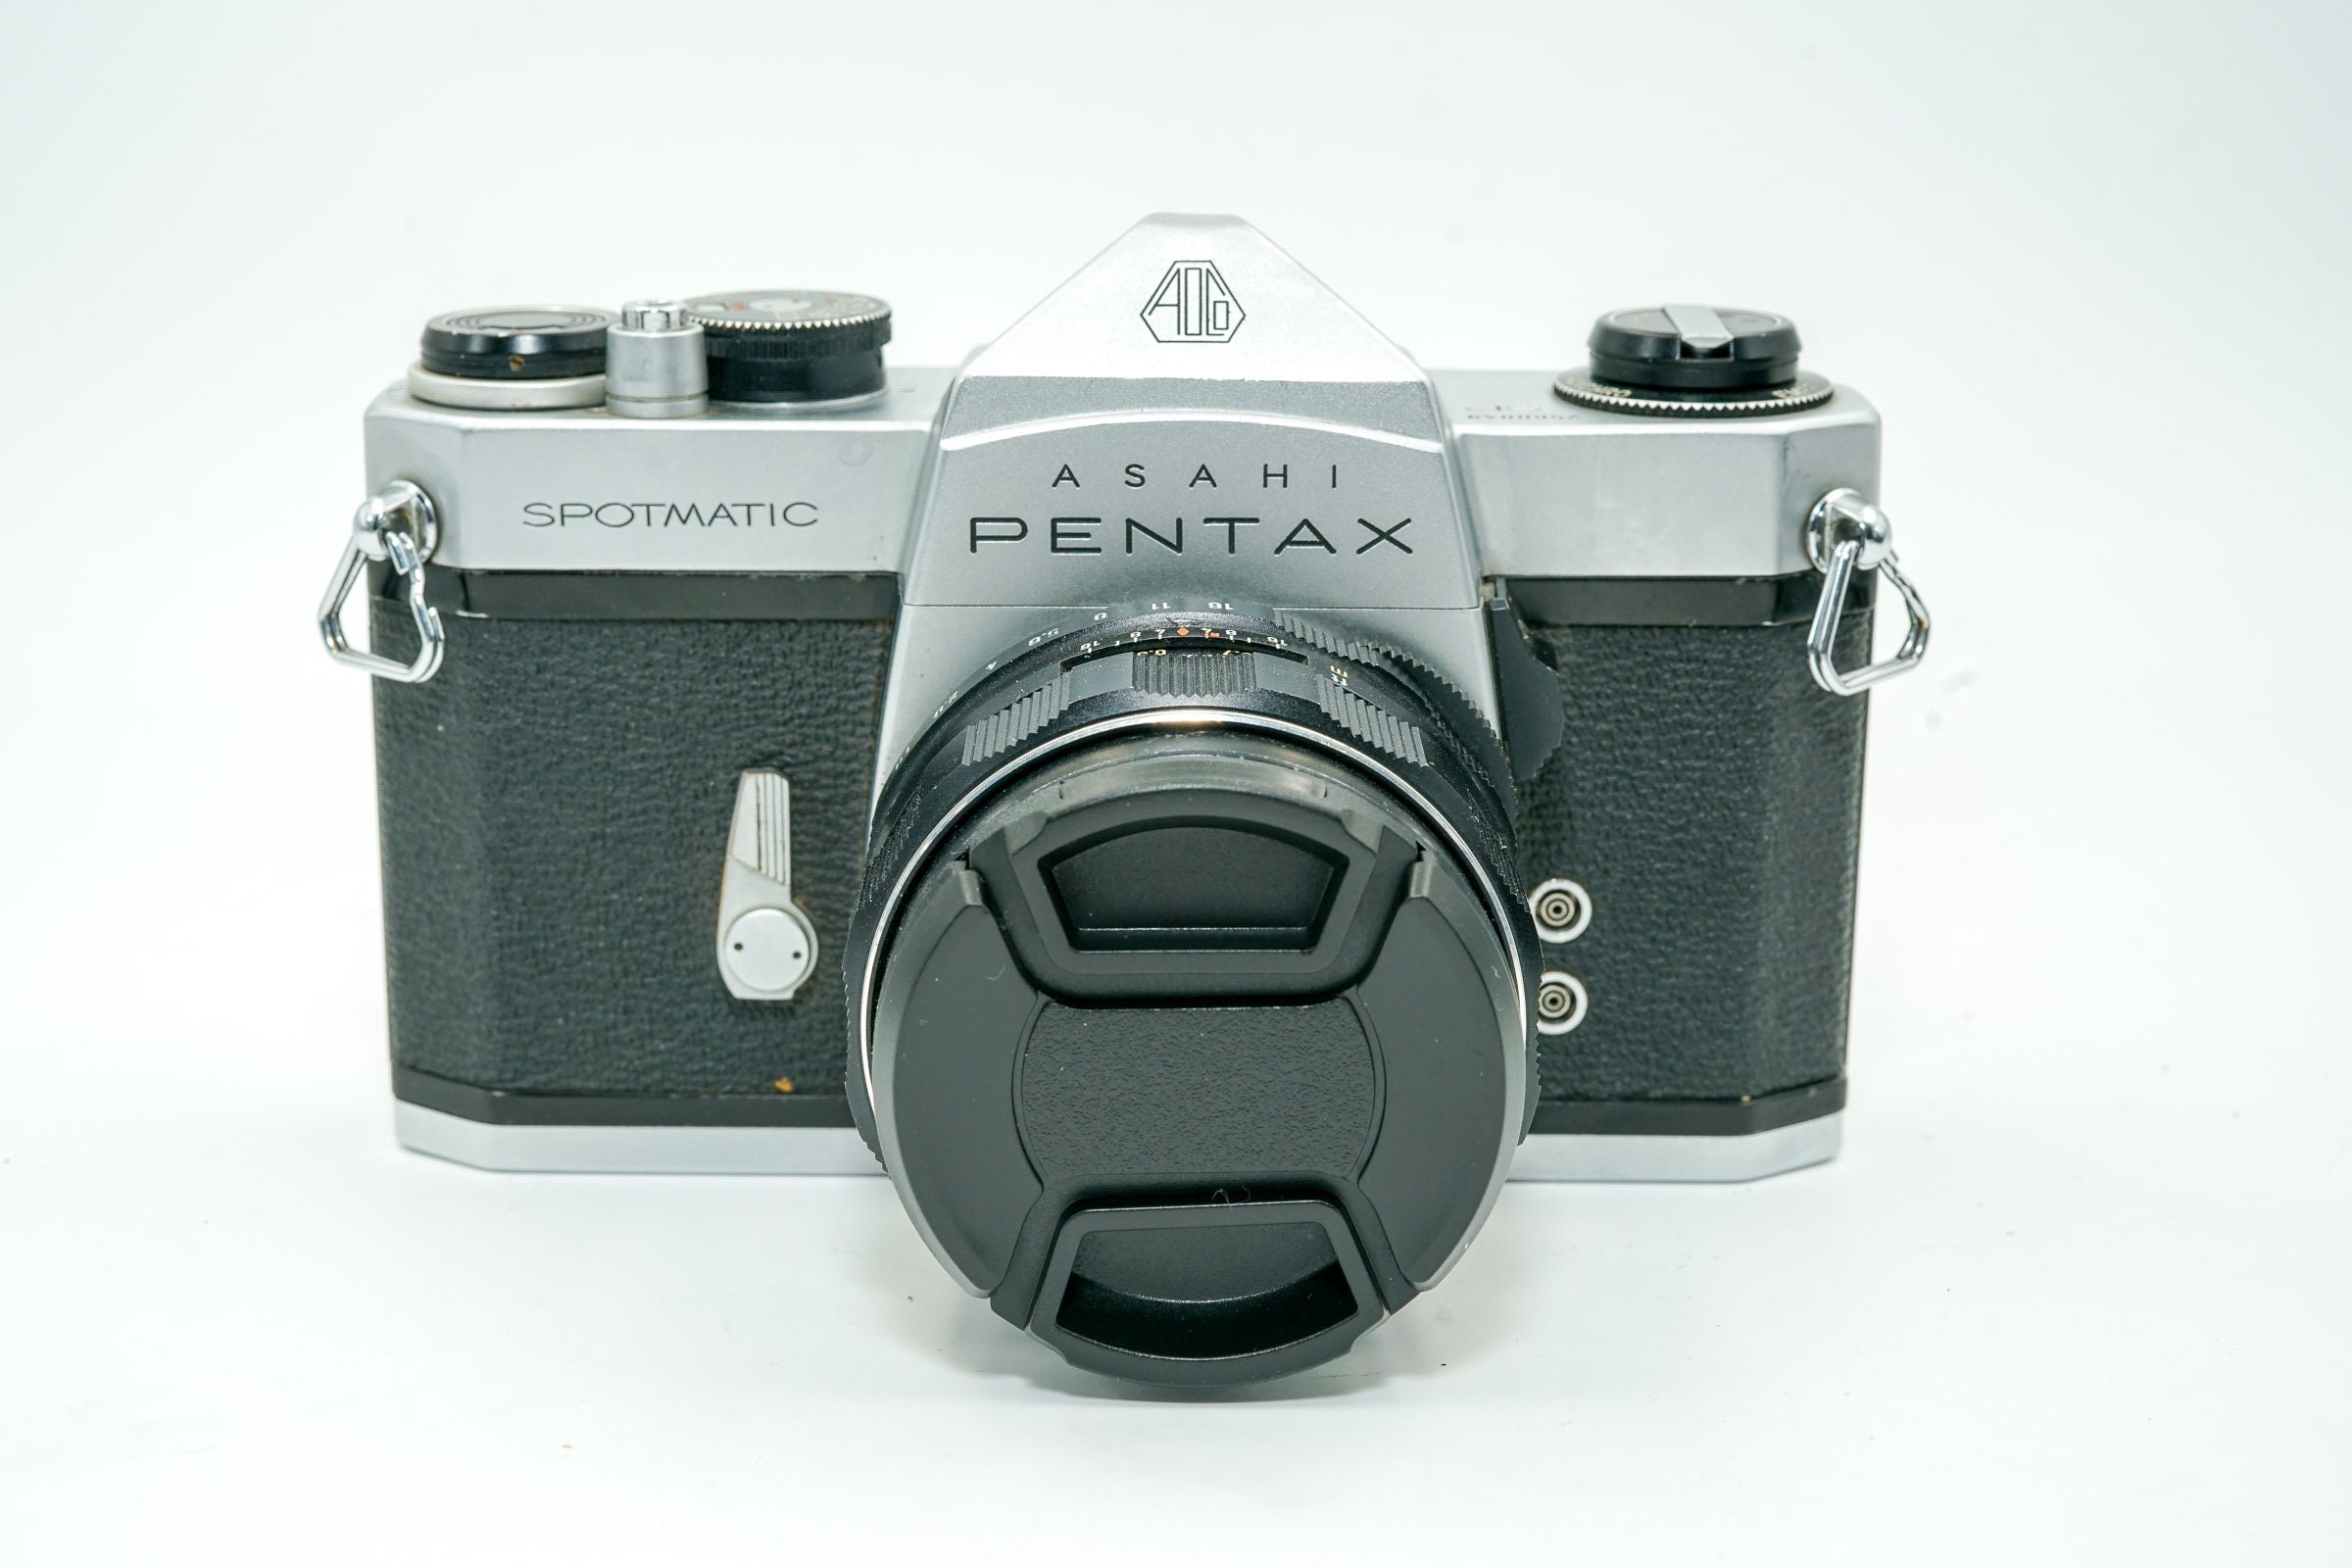 PENTAX Spotmatic SP 35mm SLR Camera with Pentax Super-Takumar 55mm F1.8